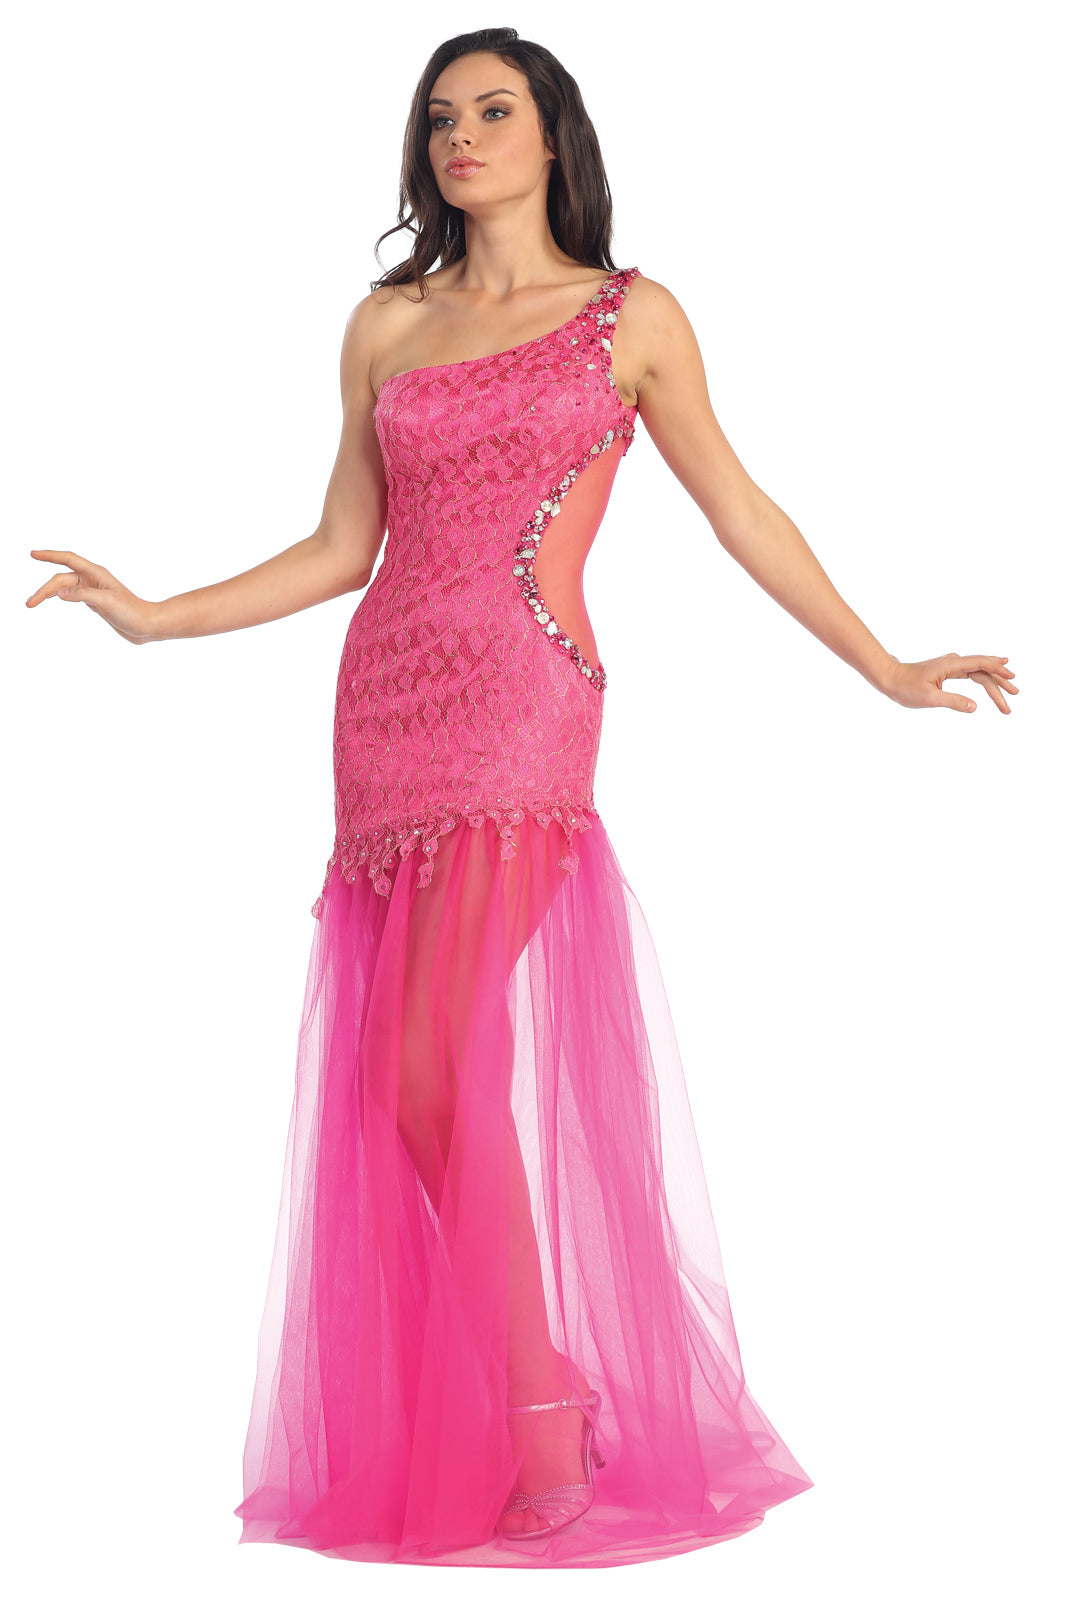 Prom Long One Shoulder Side Out Formal Dress - The Dress Outlet Elizabeth K FUCHSIA